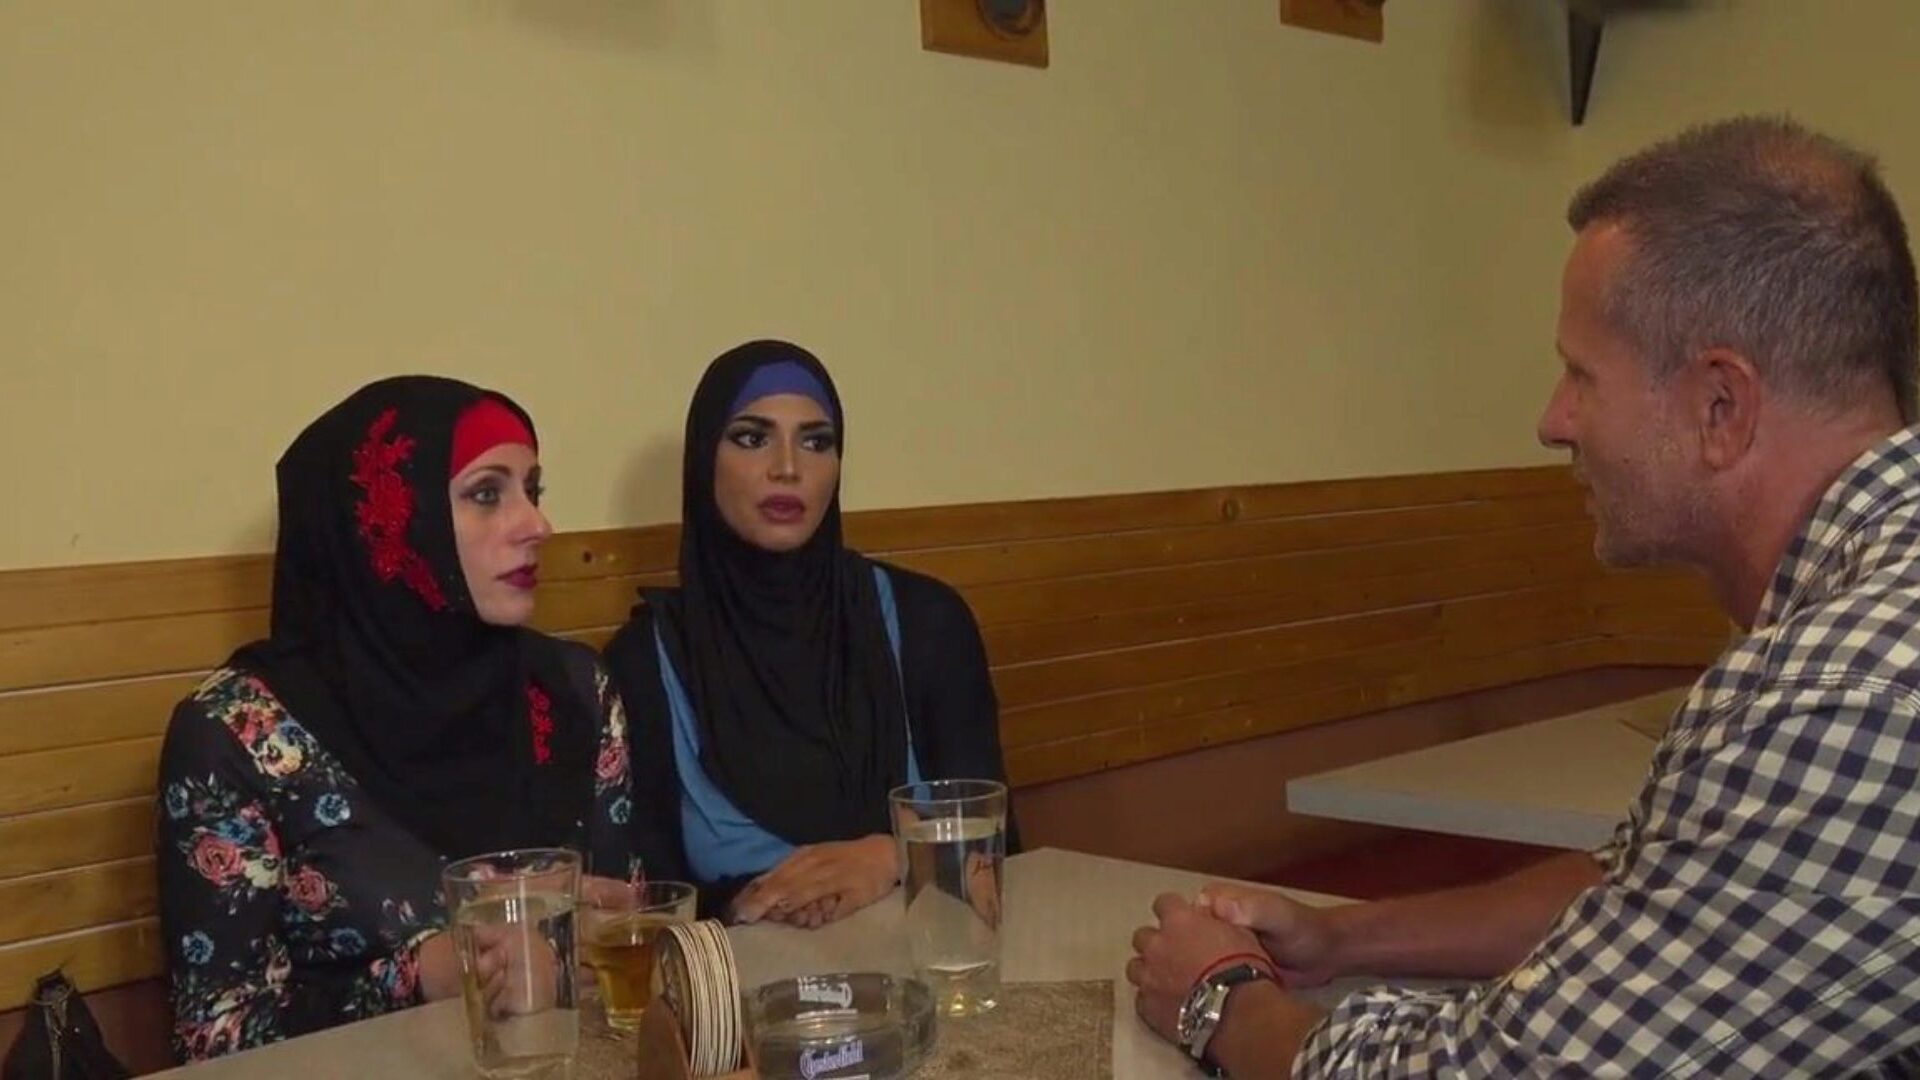 hidżab muzułmański scenariusz 11, darmowe muzułmańskie hidżab porno hd a9 oglądaj hidżab muzułmański scenariusz 11 film na xhamster, najgrubsza strona internetowa w HD z mnóstwem arabskich muzułmańskich hidżabów i arabskich scen porno z hidżabu